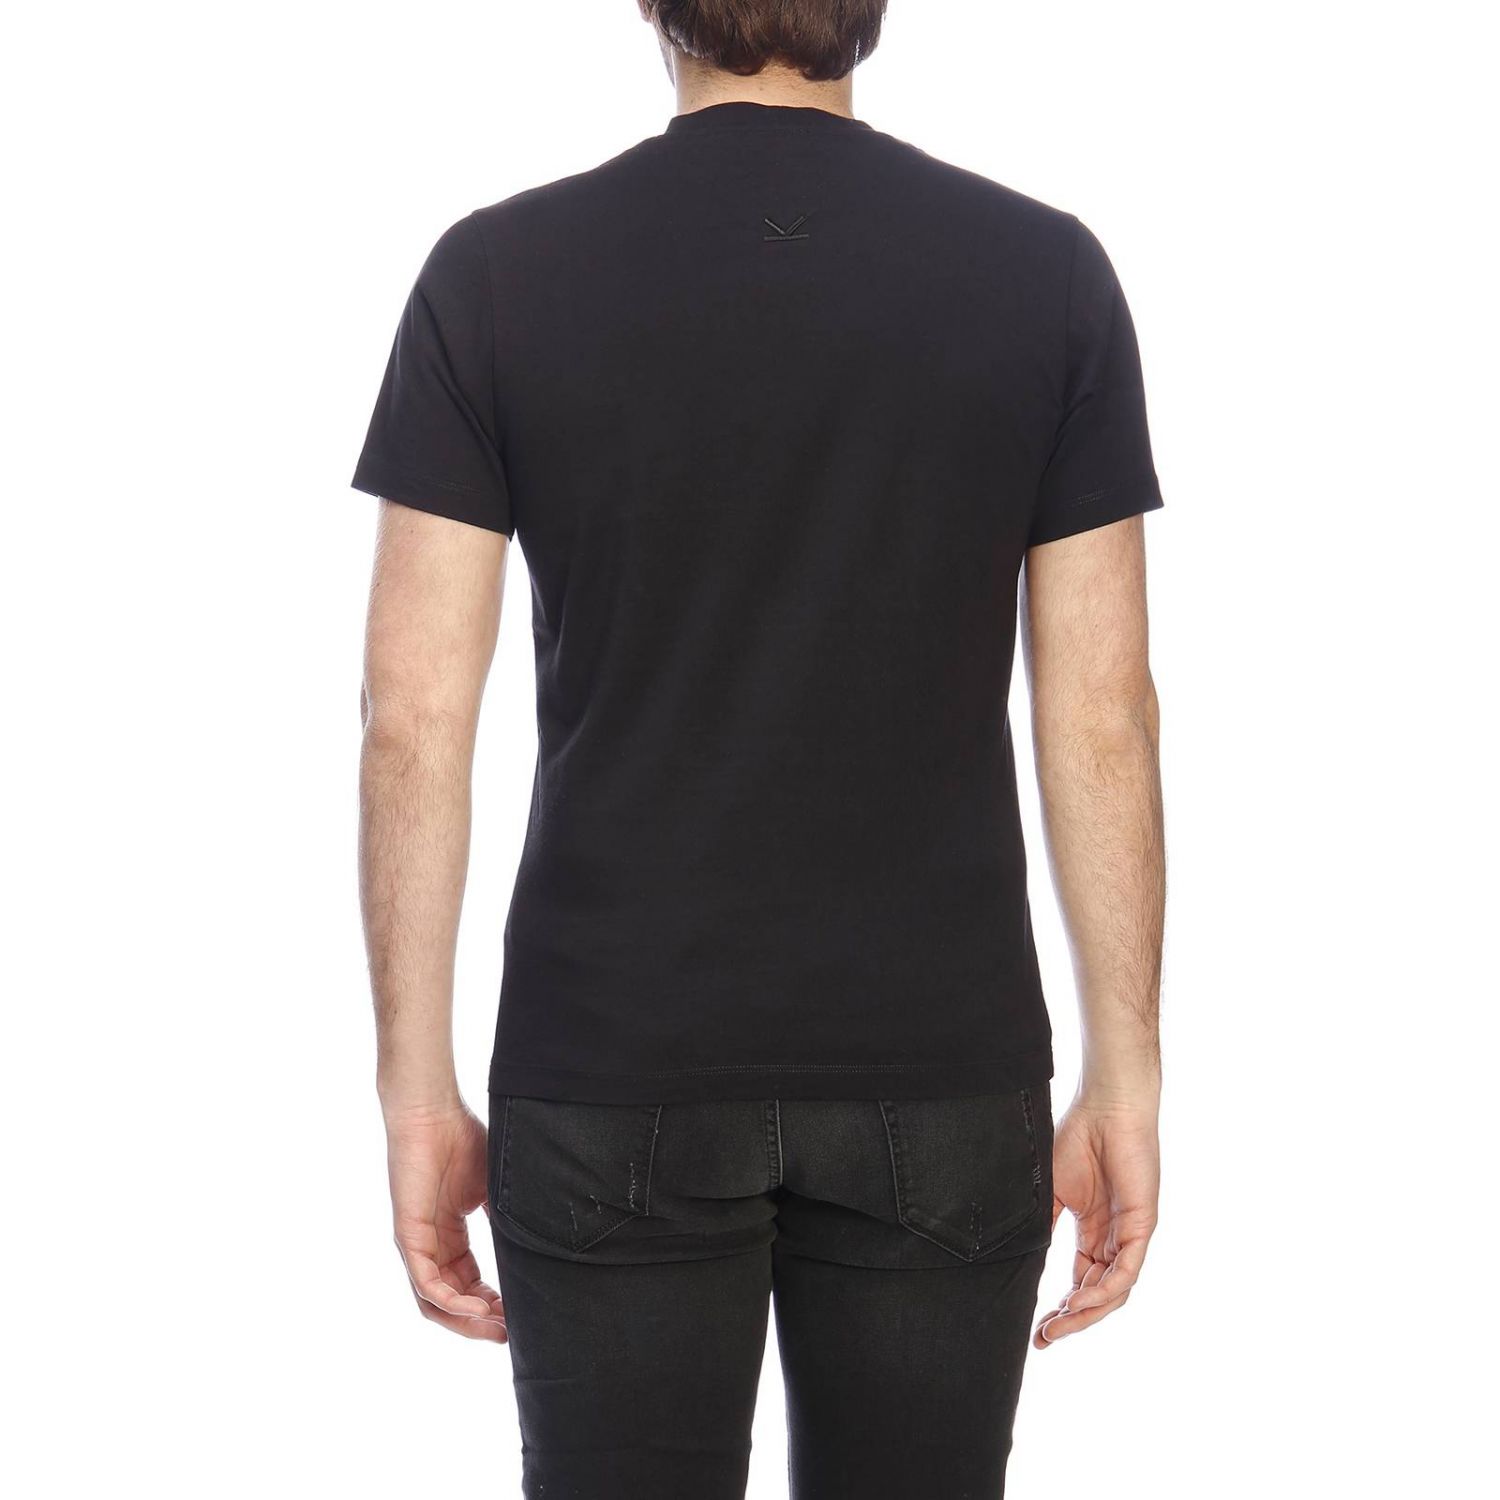 Kenzo Outlet: T-shirt men | T-Shirt Kenzo Men Black | T-Shirt Kenzo ...